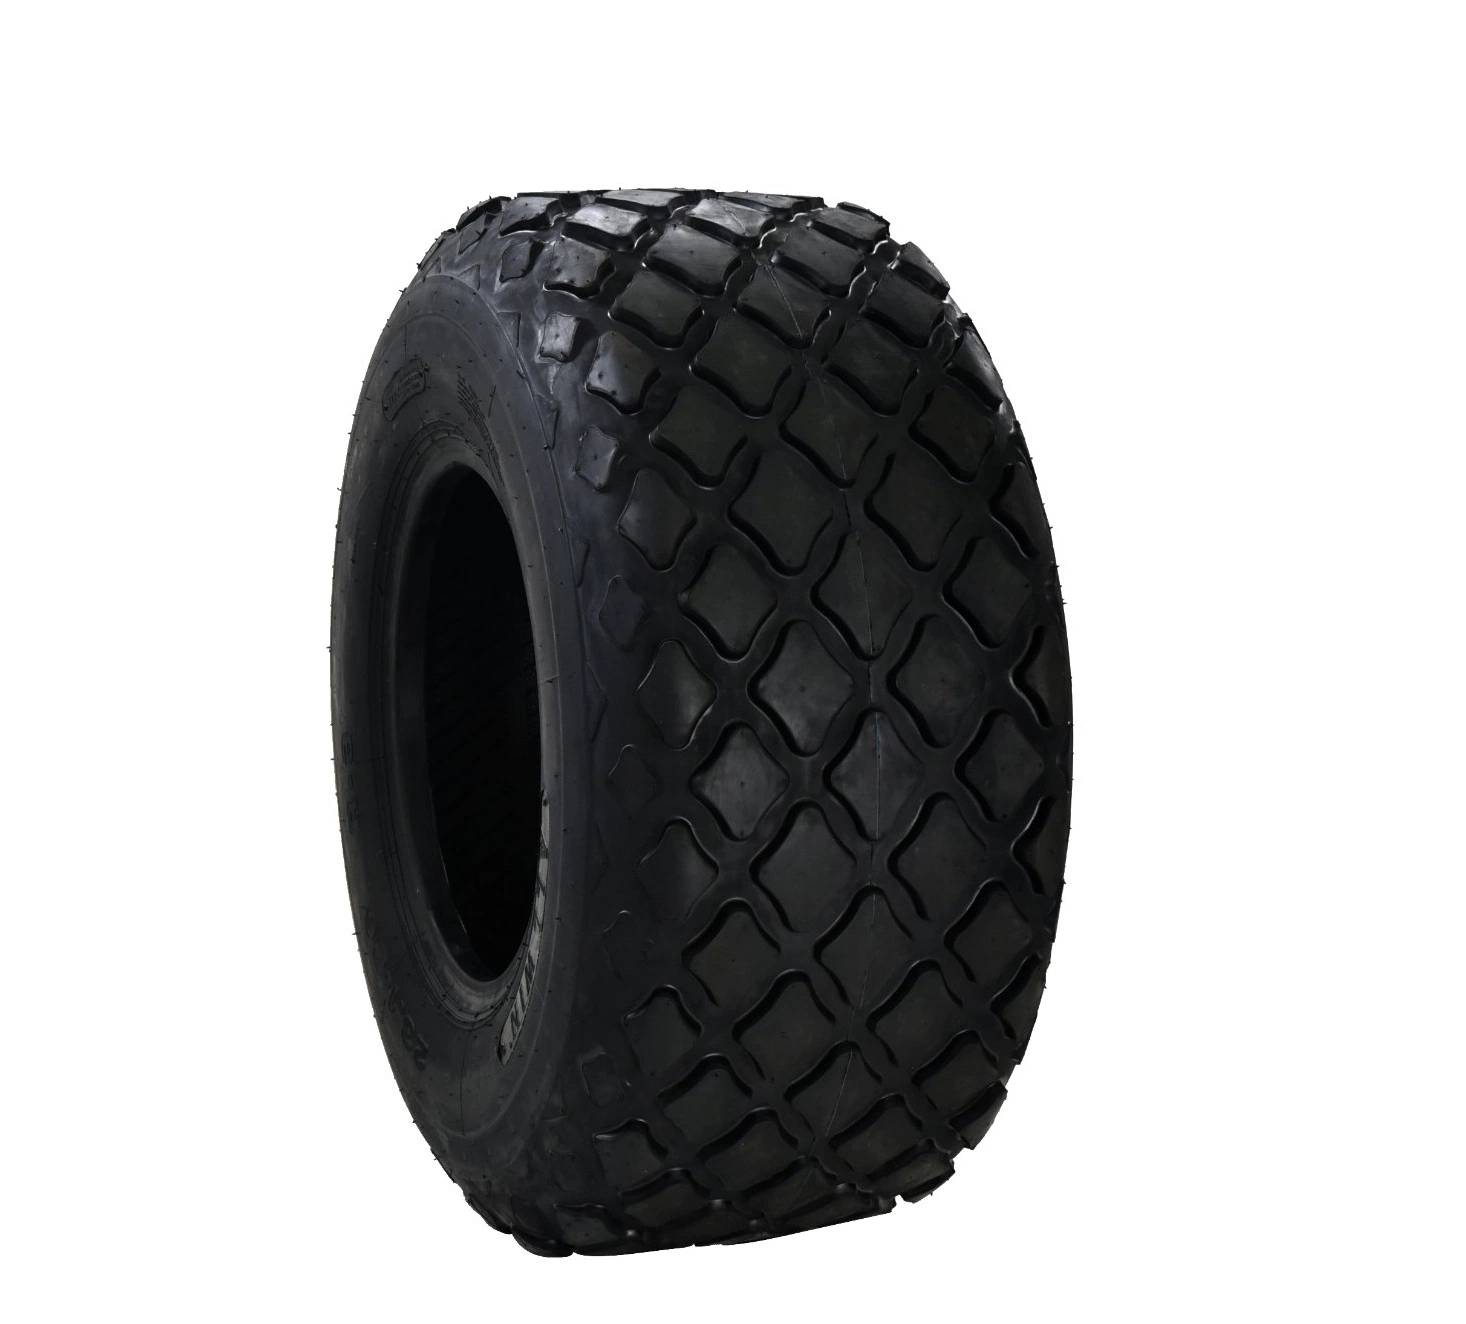 Pneu industriel de taille 23.1-26 utilisé pour le compacteur et le pneu à rouleaux